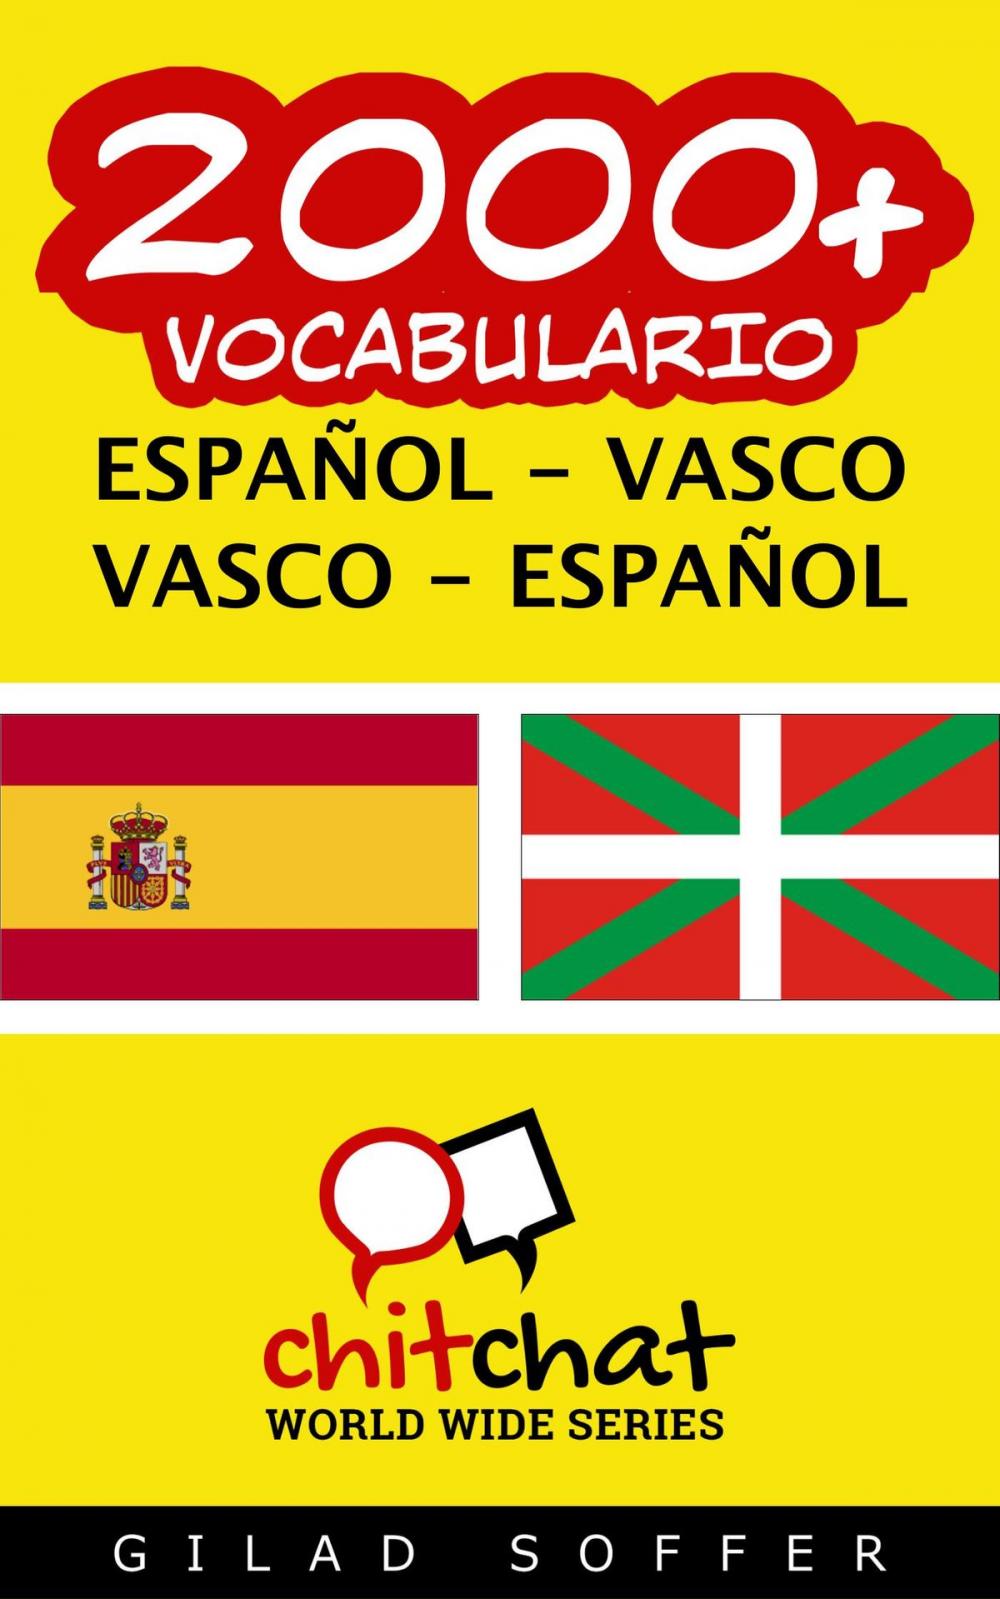 Big bigCover of 2000+ vocabulario español - vasco